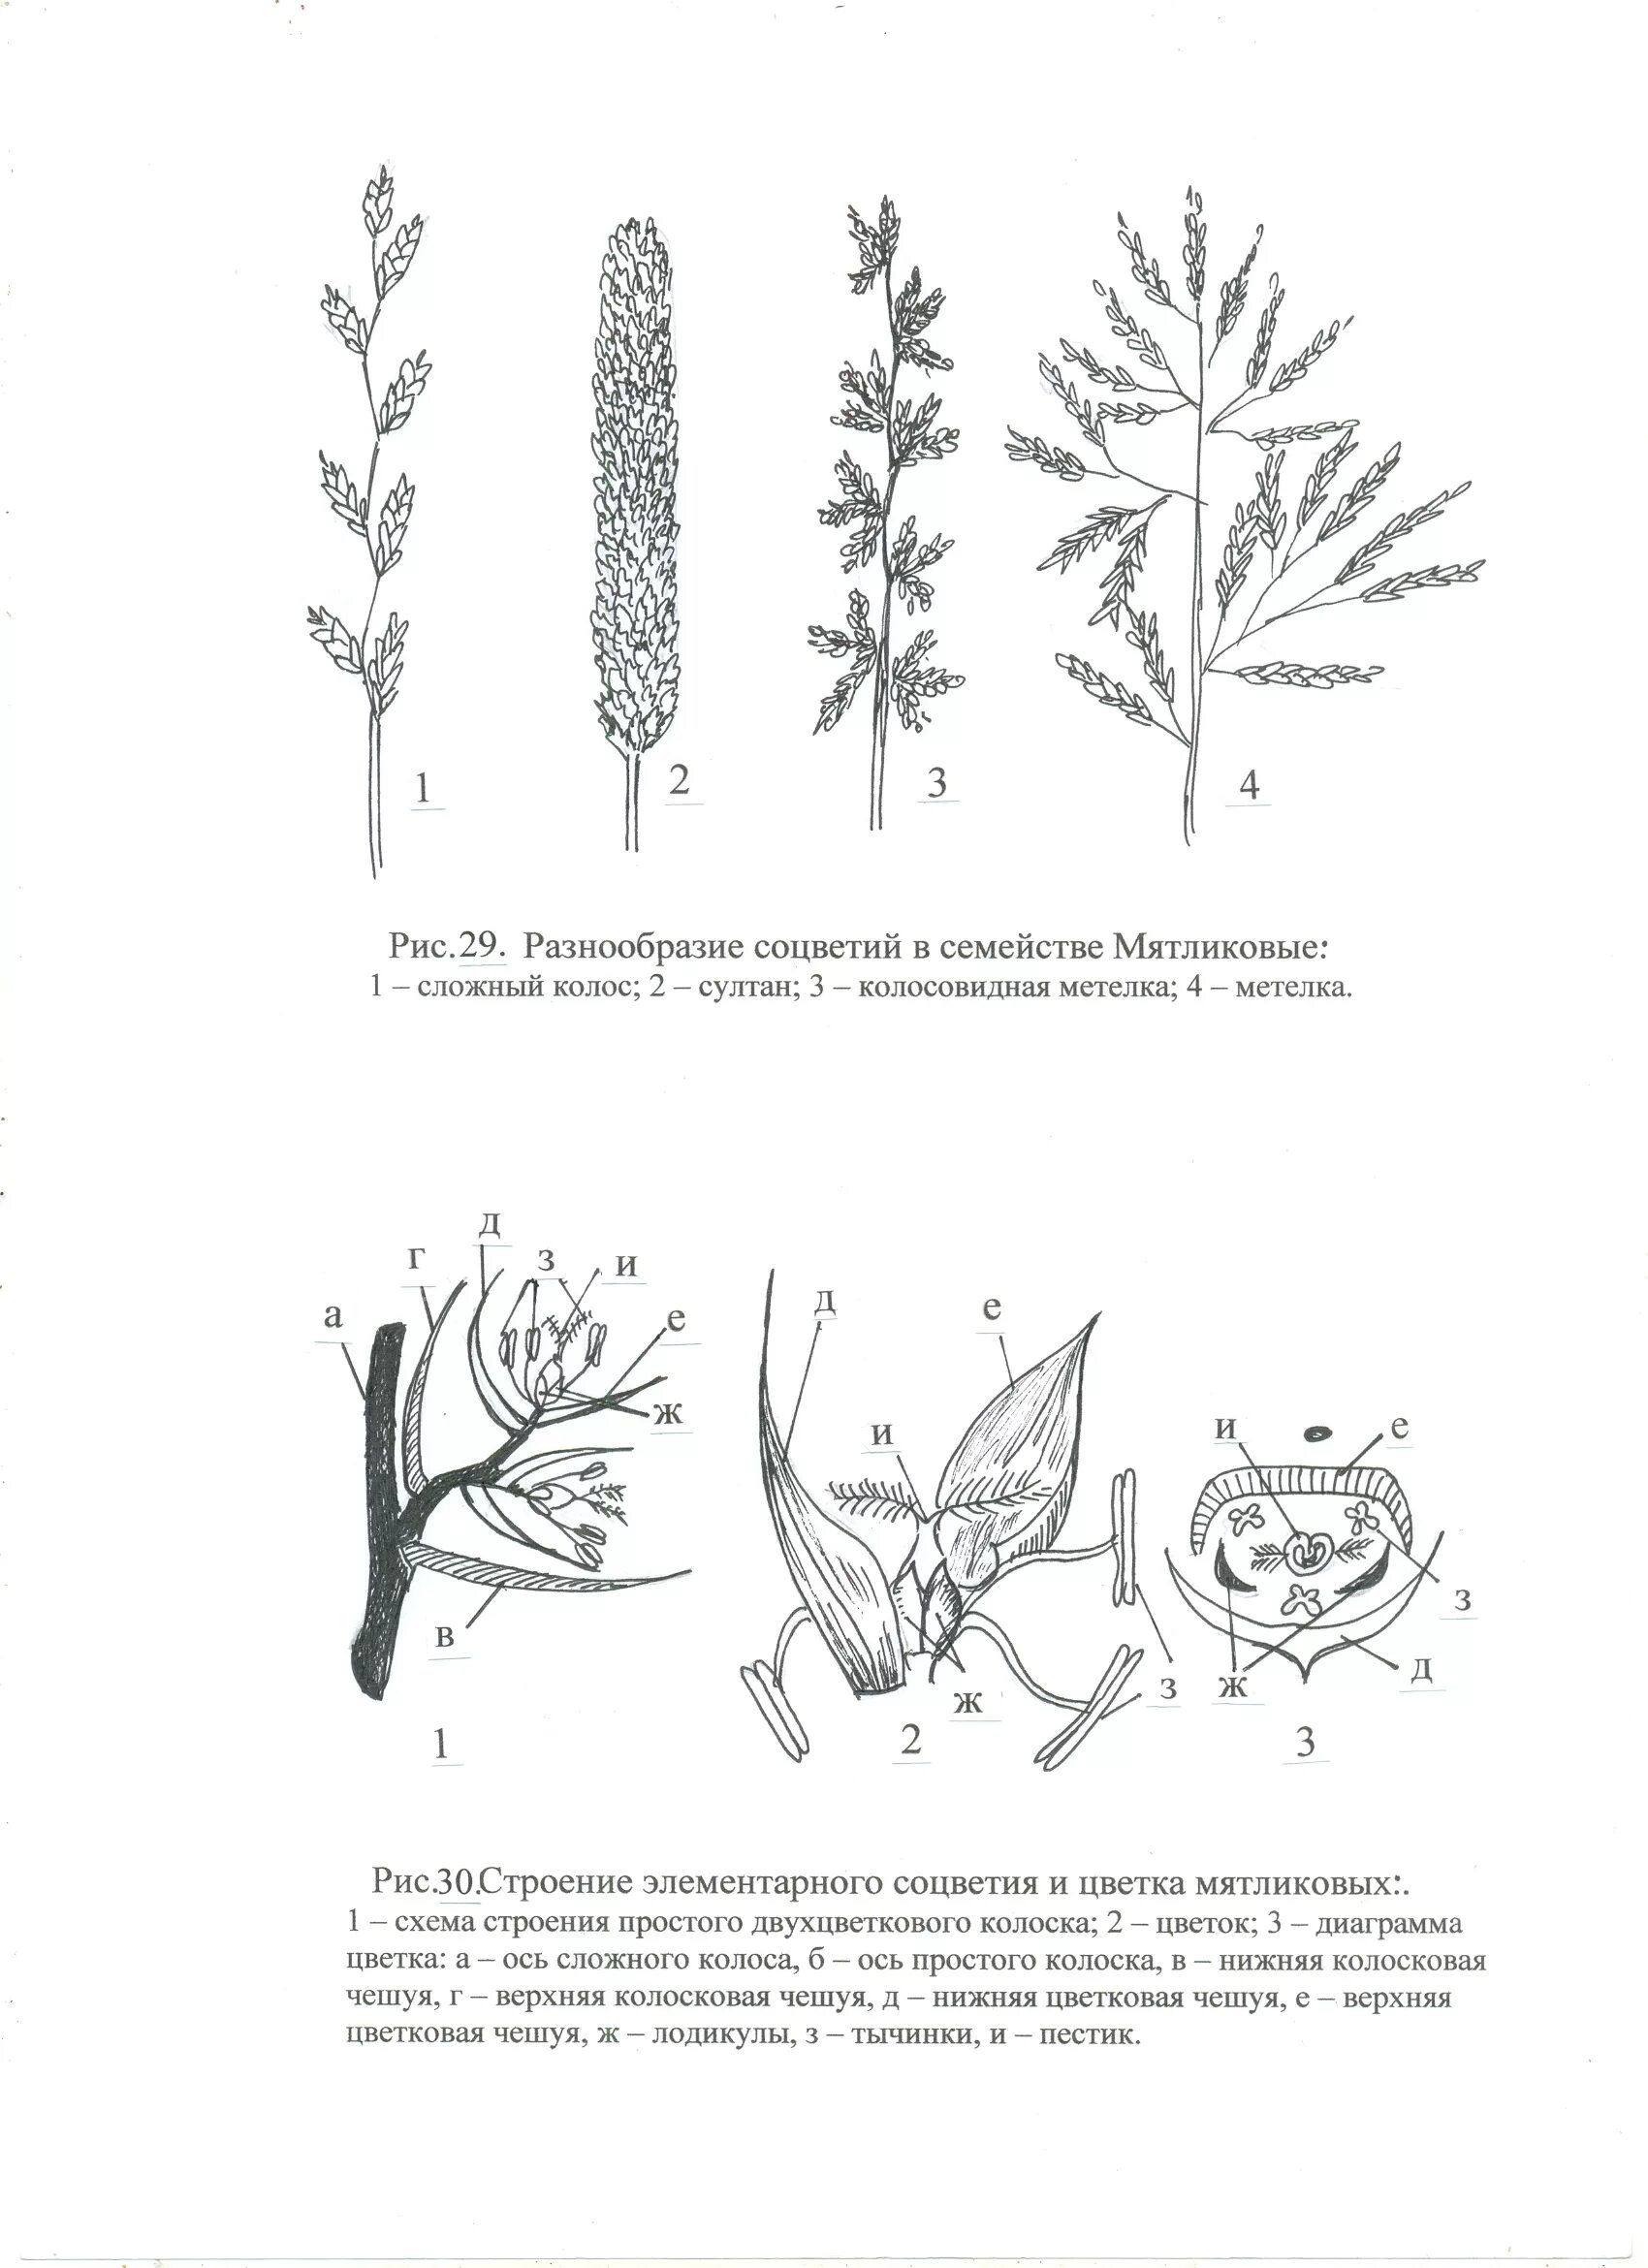 Соцветие цветка злаков. Соцветие злаковых мятликовых. Схема цветка злаковых растений. Схемы соцветий злаковых растений.